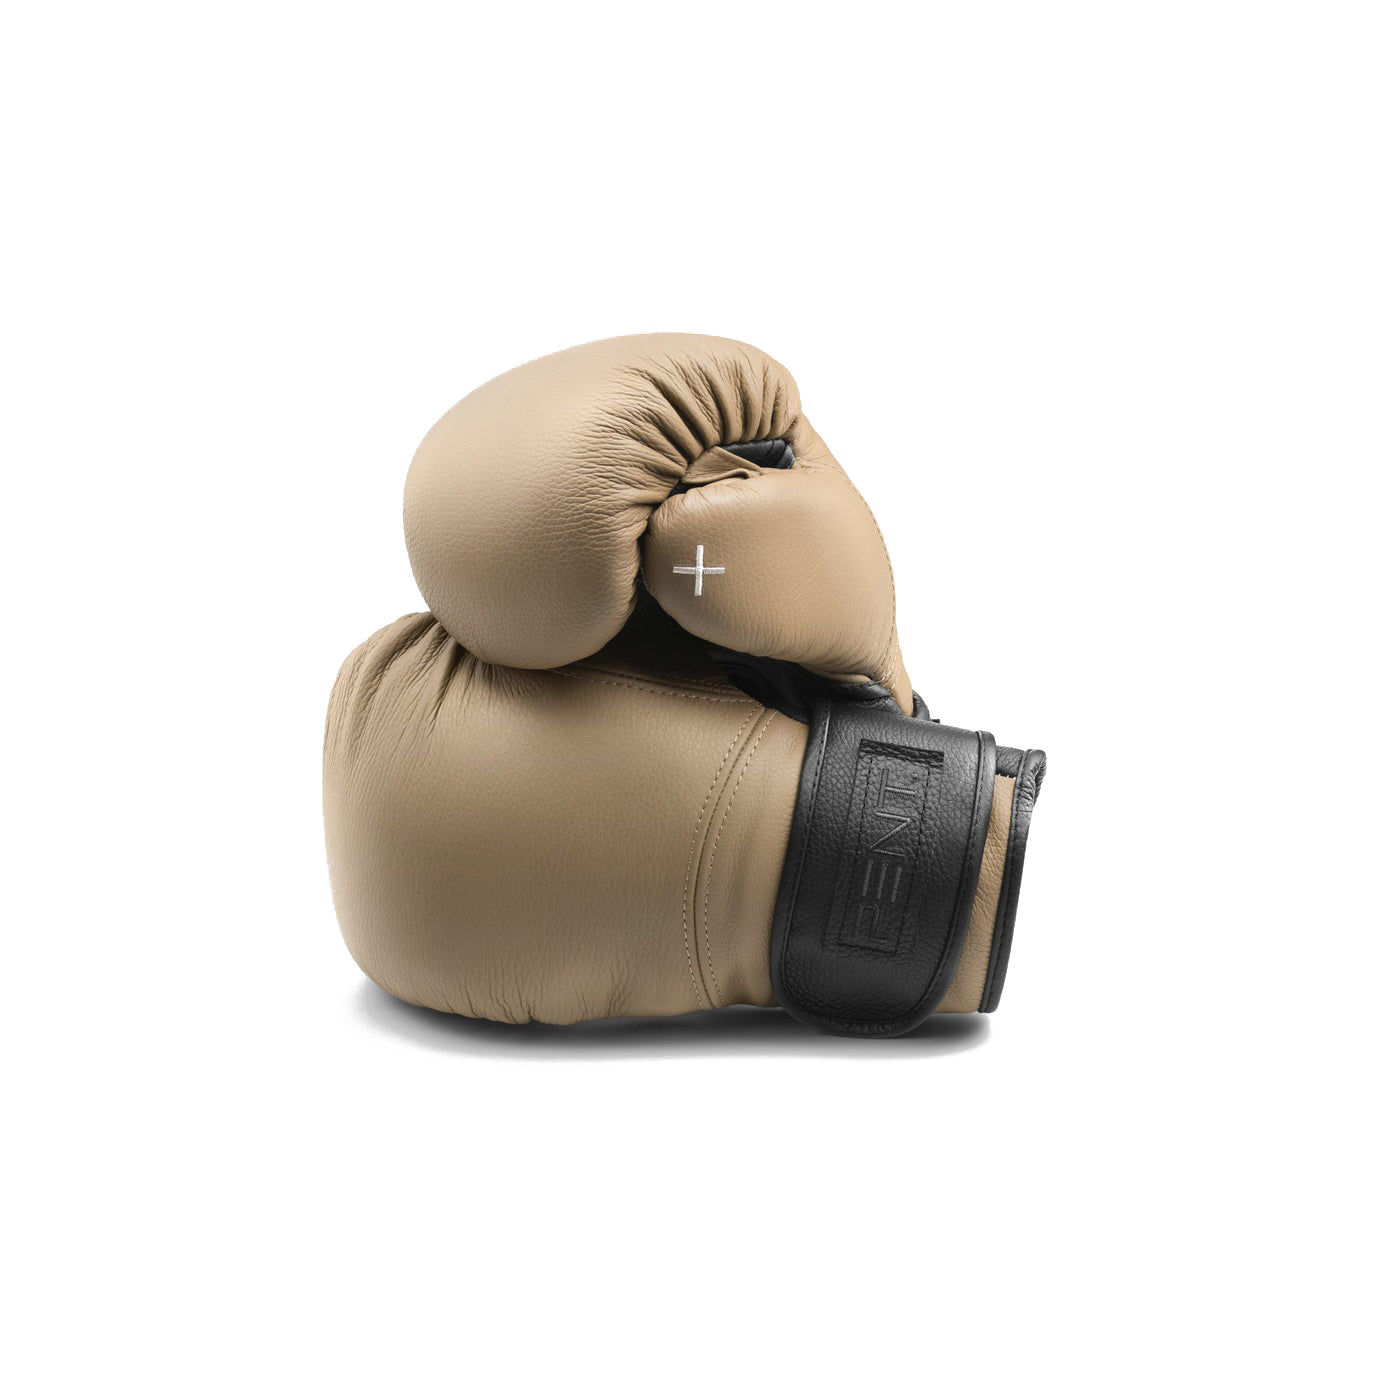 Raxa Boxing Gloves